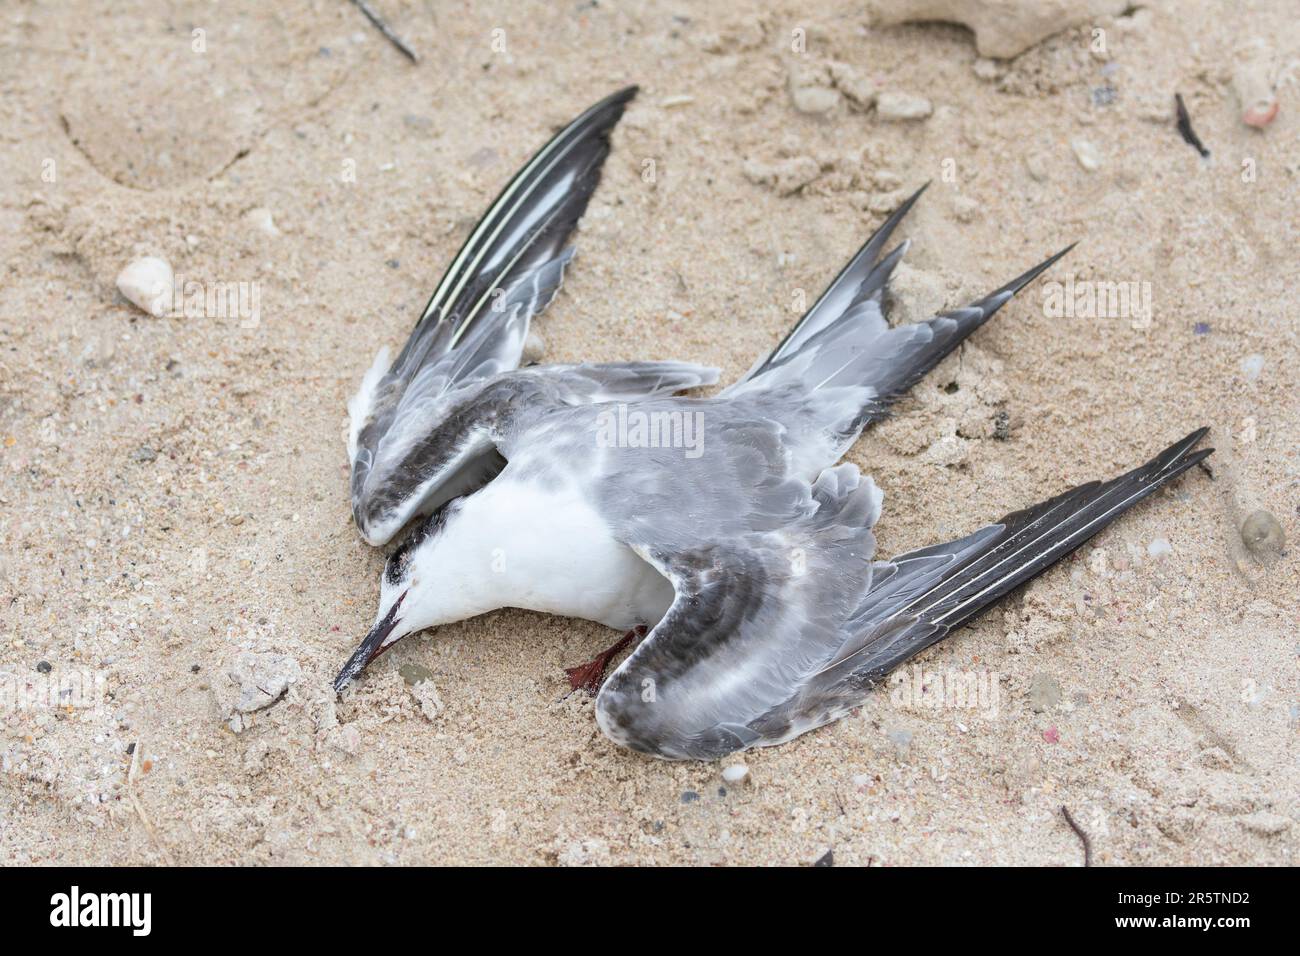 Le corps d'une sterne commune (Sterna hirundo) sur une plage, victime de la grippe aviaire, de la grippe aviaire, de la grippe aviaire, d'un virus contagieux de type A. Banque D'Images